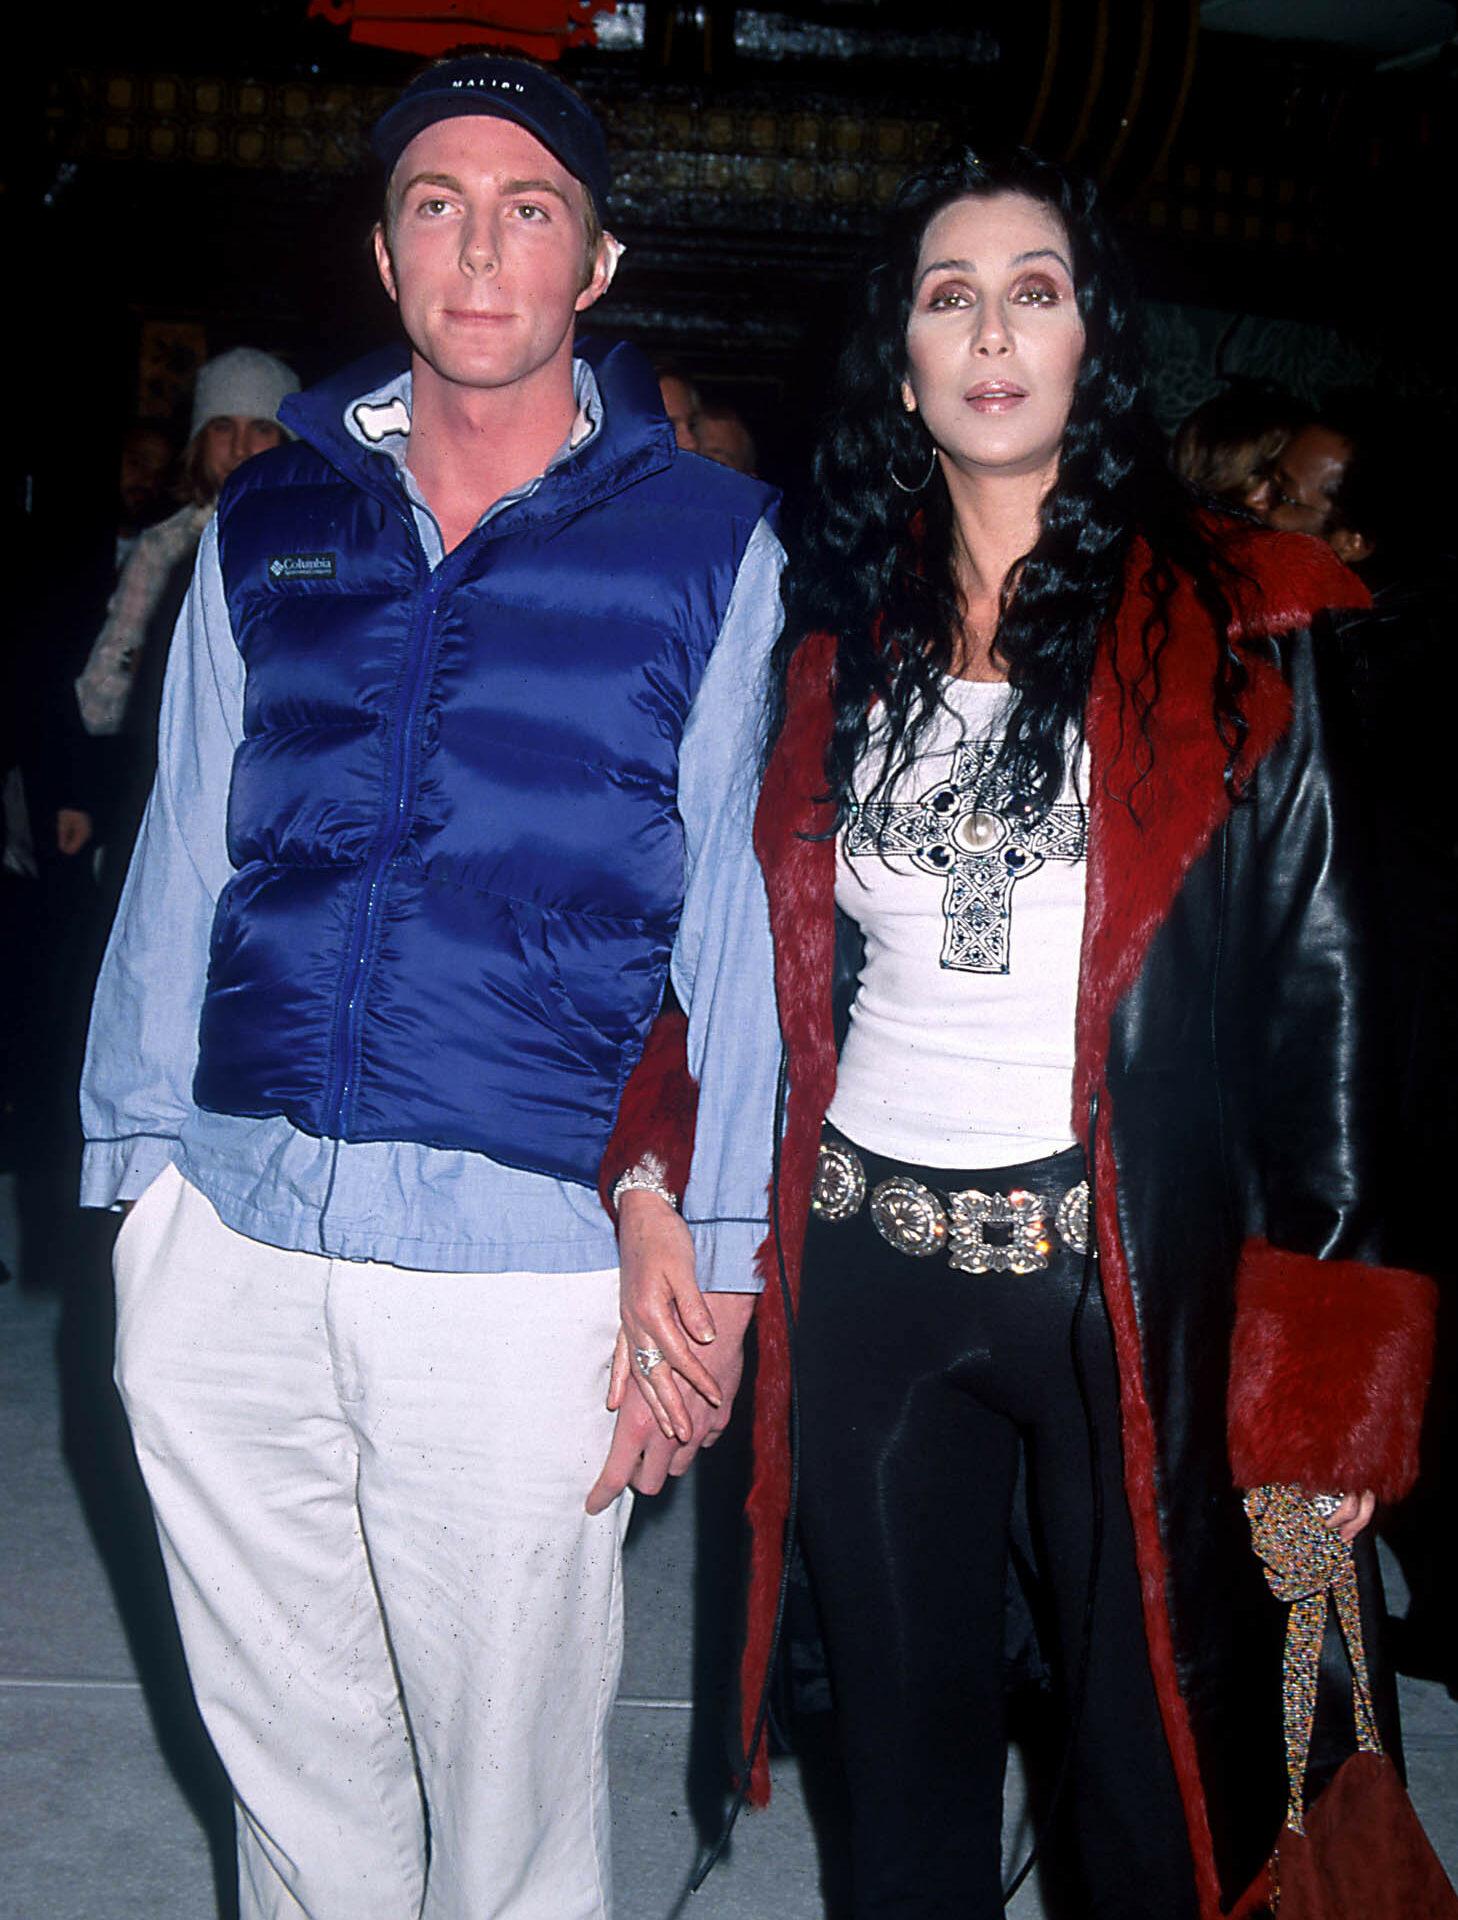 Elijah Blue, filho de Cher e Gregg Allman, pede o divórcio de sua esposa